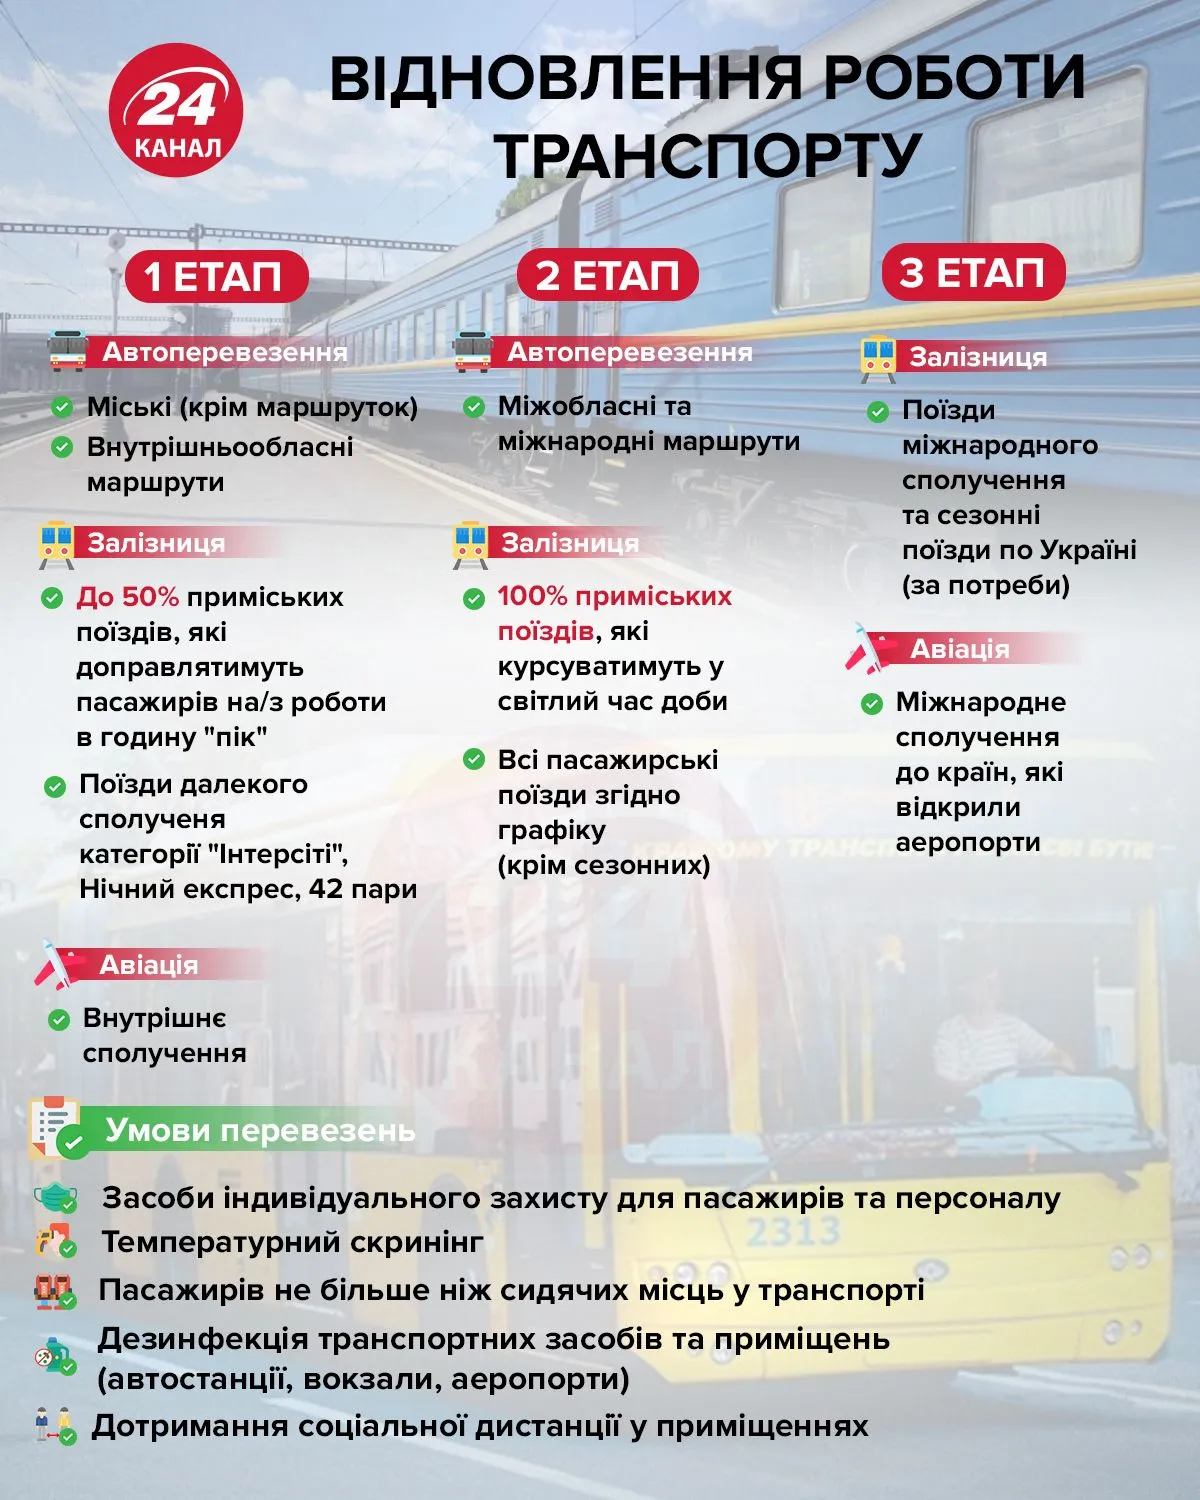 відновлення роботи транспорту автобусів залізниці в Україні під час карантину